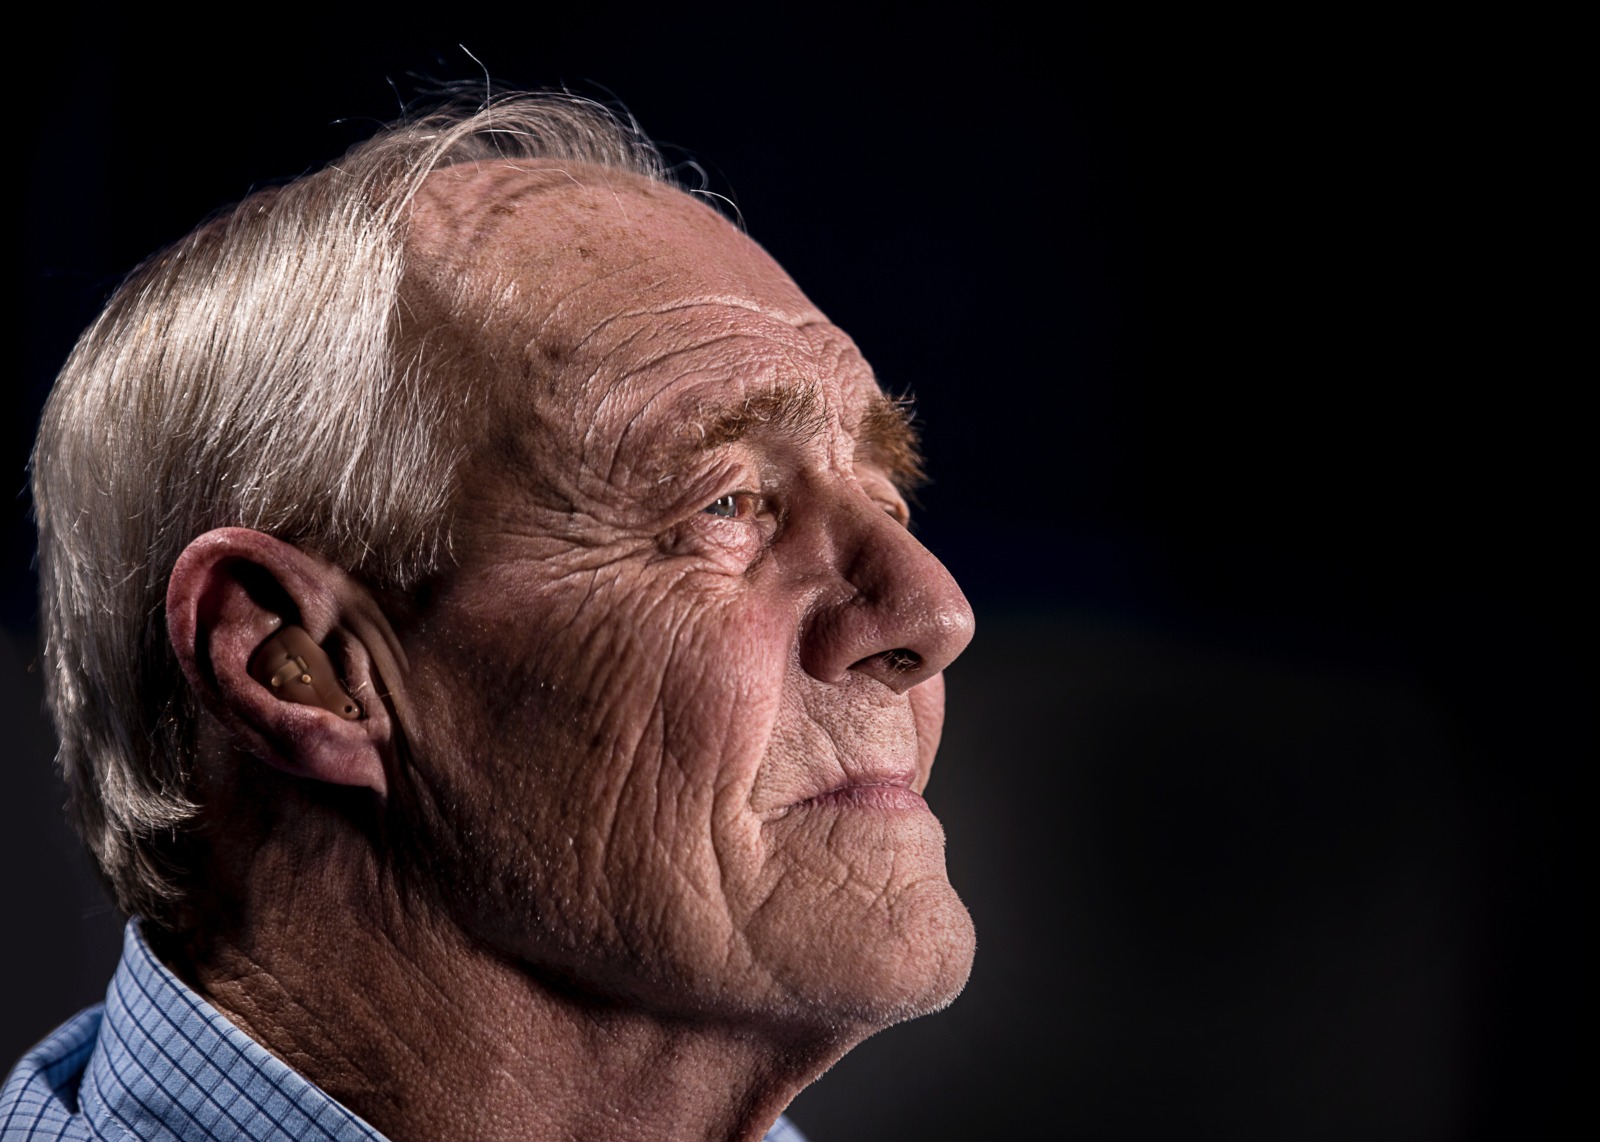 Voice spraakassistent houdt ouderen langer zelfstandig